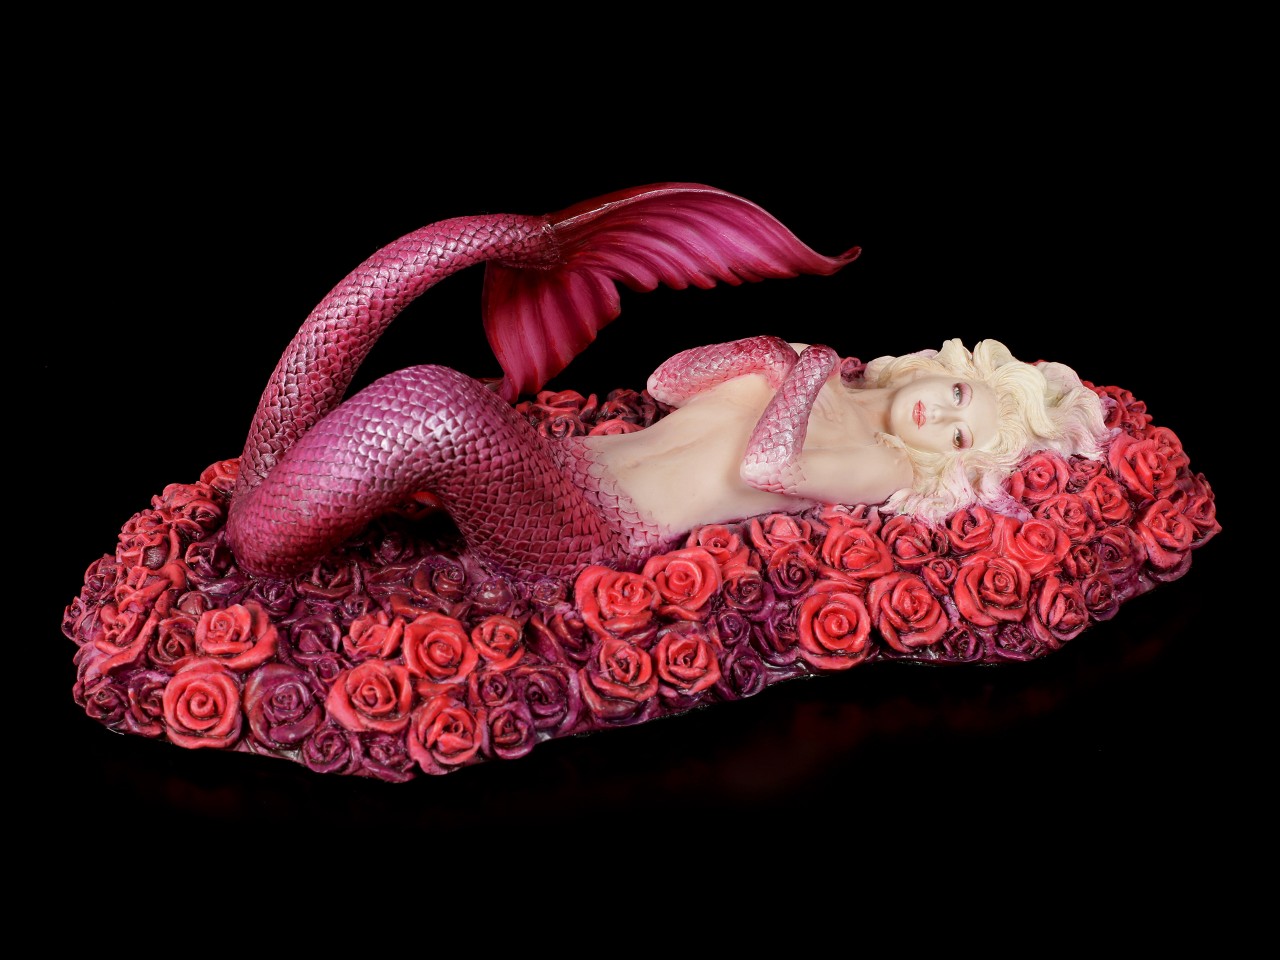 Mermaid Figurine - Sea of Roses